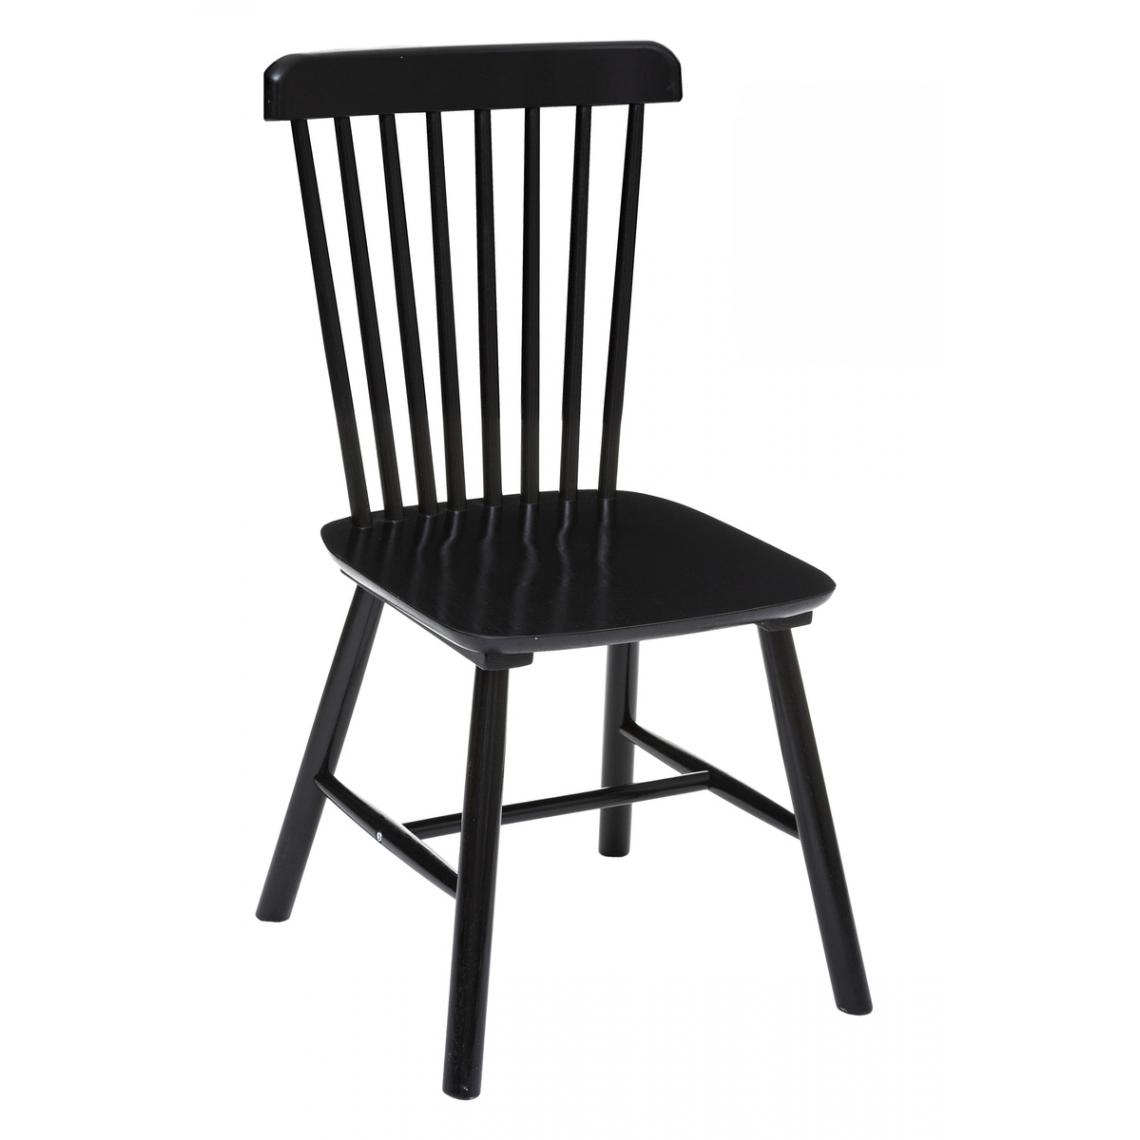 Pegane - Lot de 2 chaises en bois coloris noir - Longueur 90 x Profondeur 102 x Hauteur 72 cm - Chaises